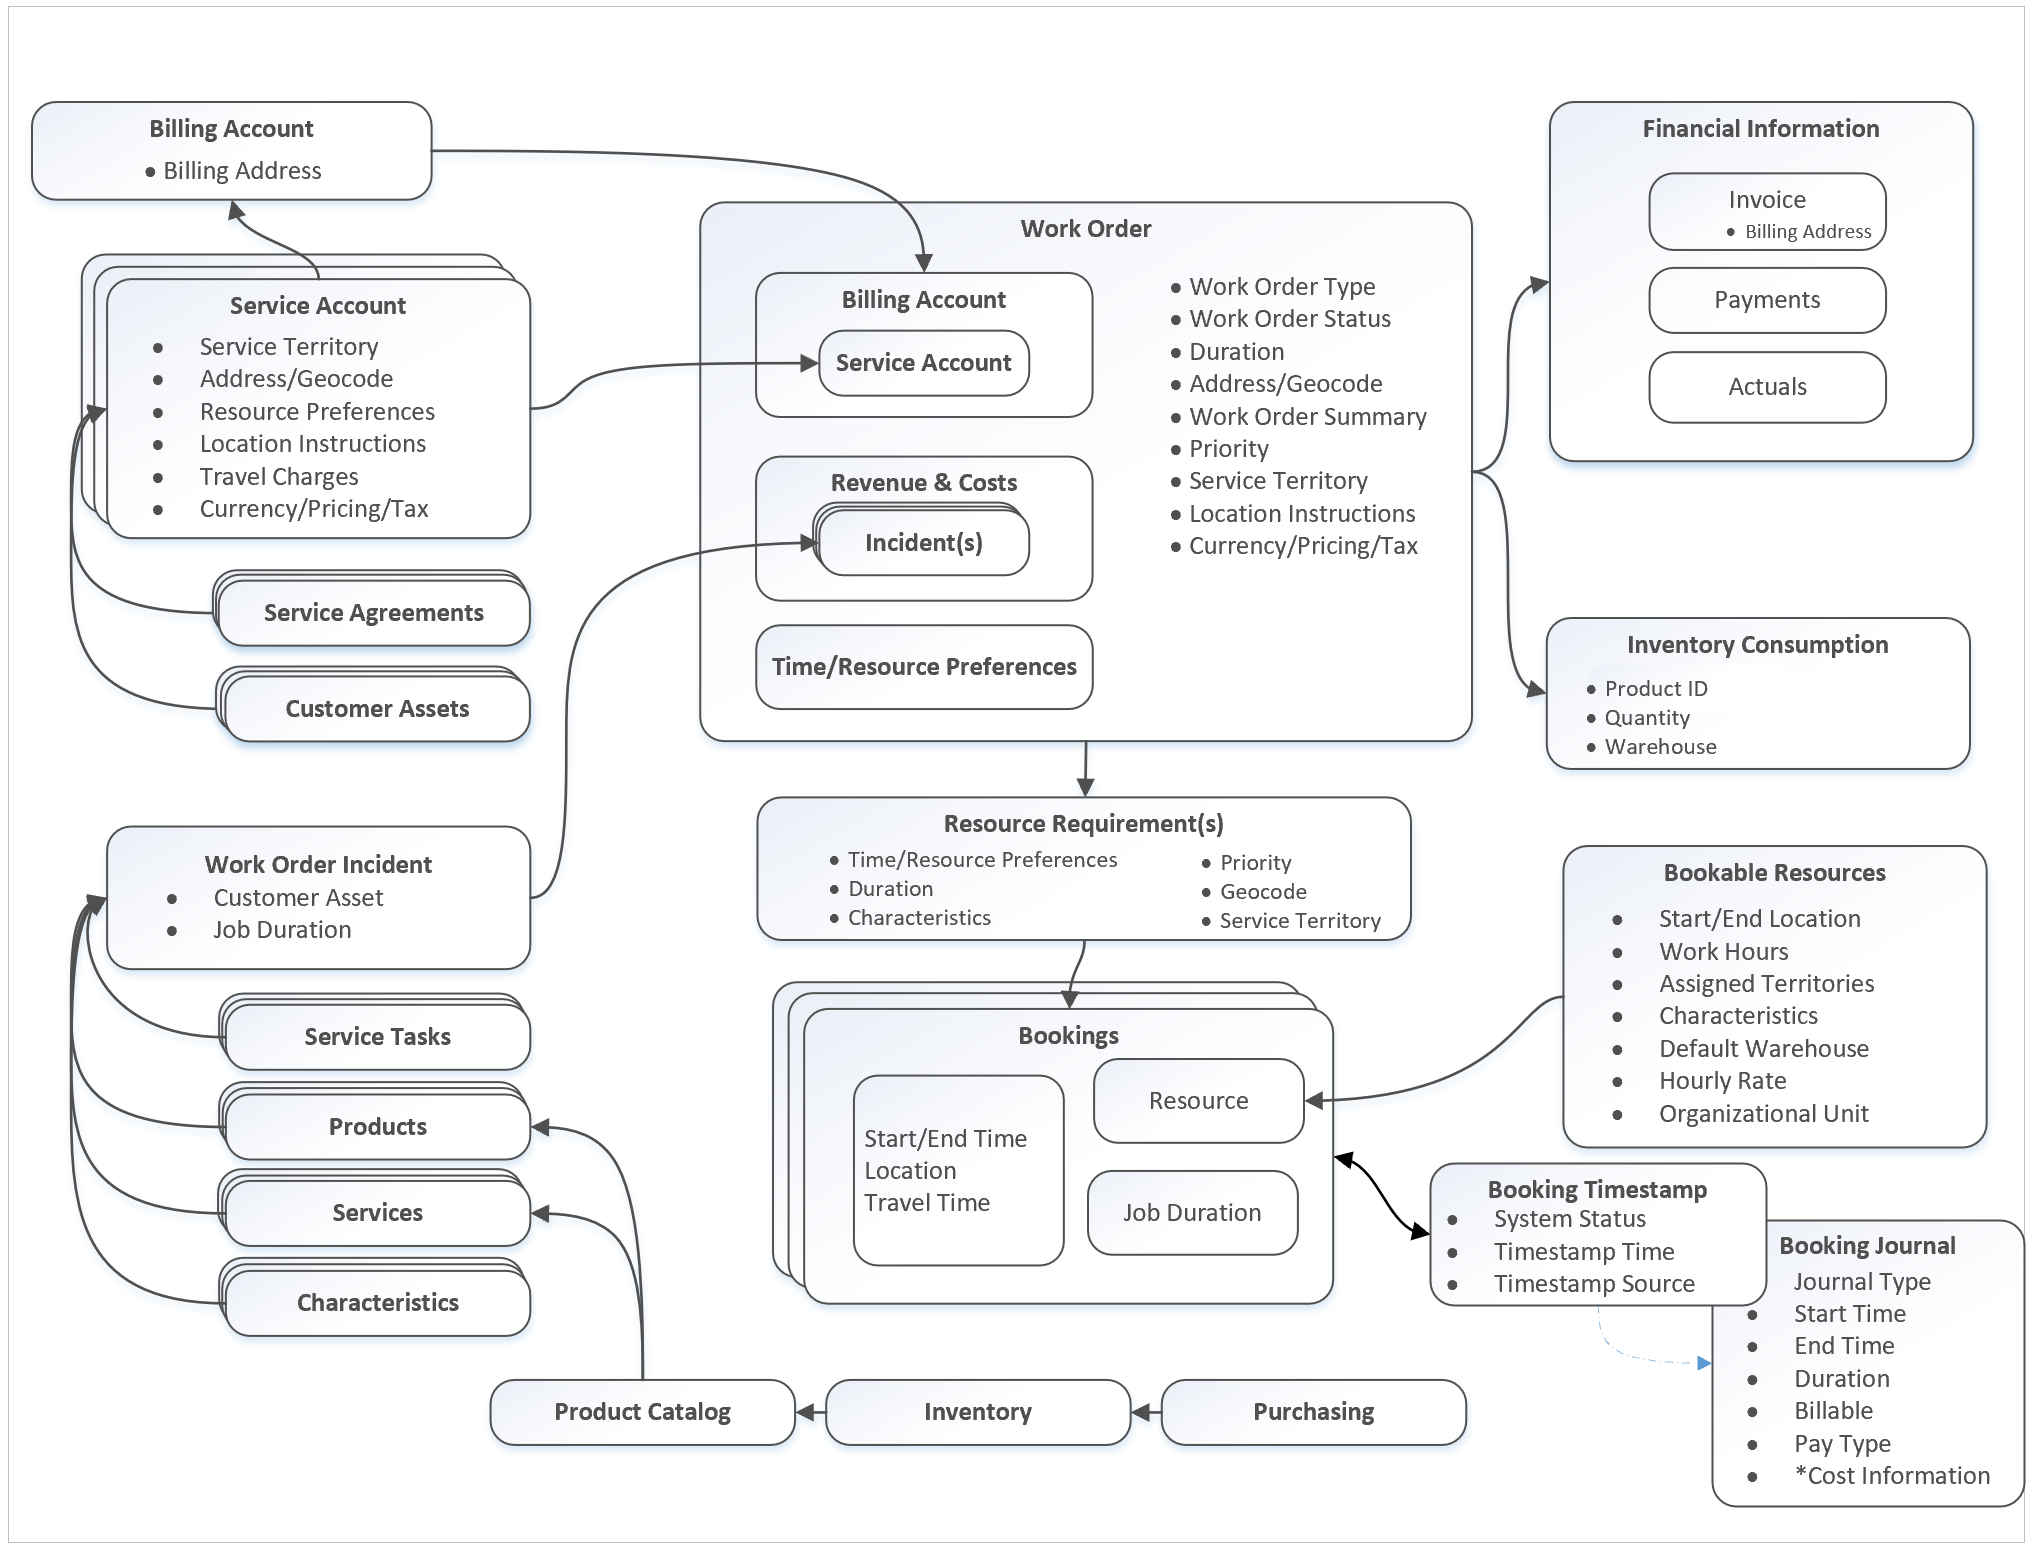 Diagramme der Arbeitsauftrags-Prozessarchitektur.